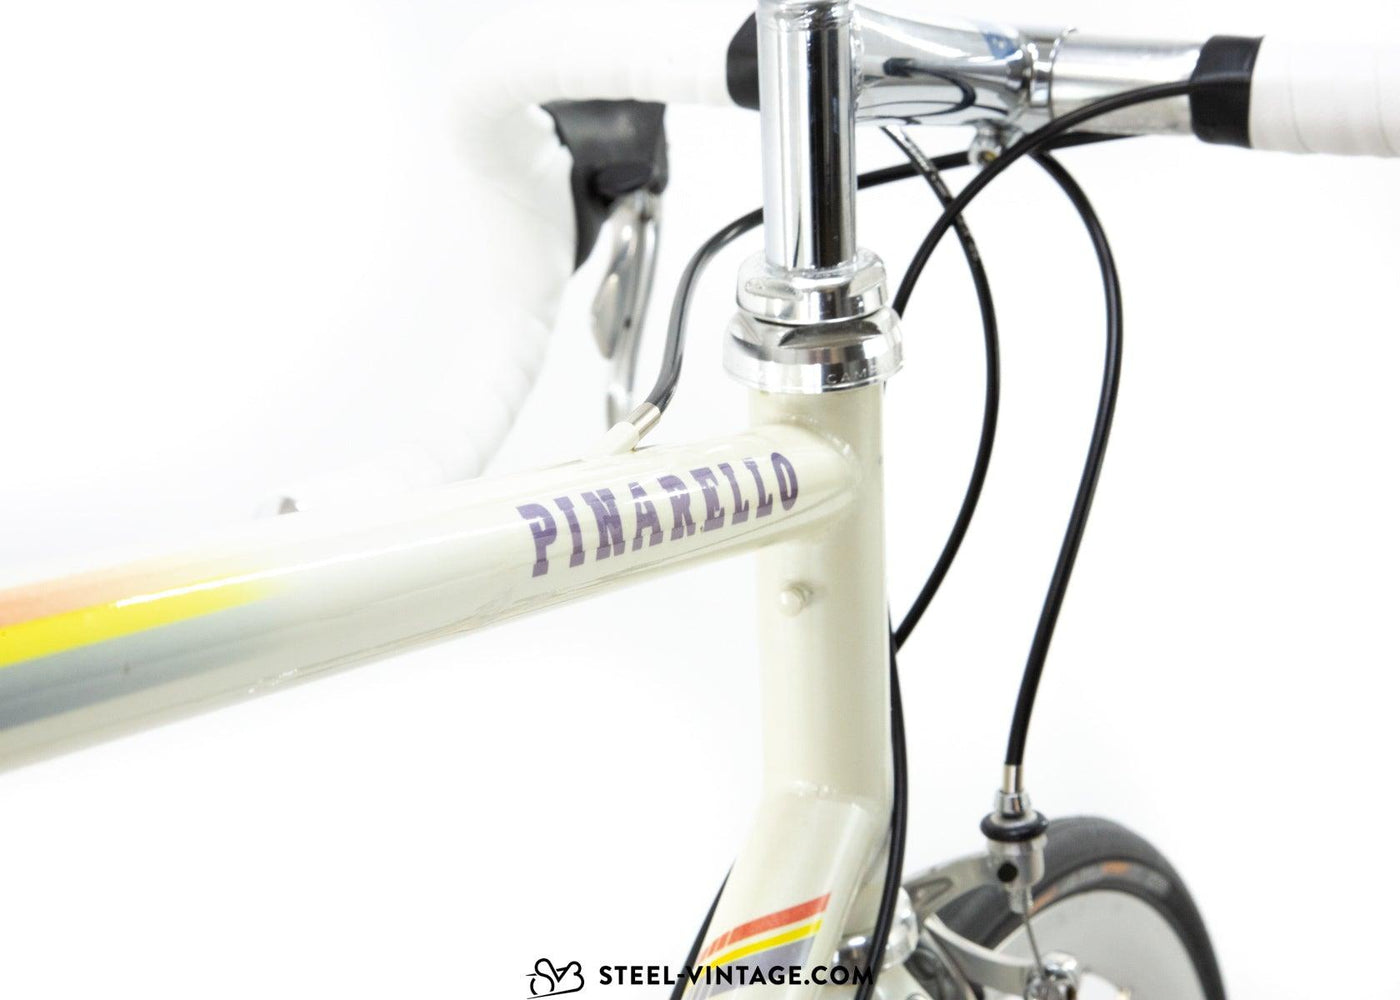 Pinarello Banesto Road Bicycle 1990s - Steel Vintage Bikes